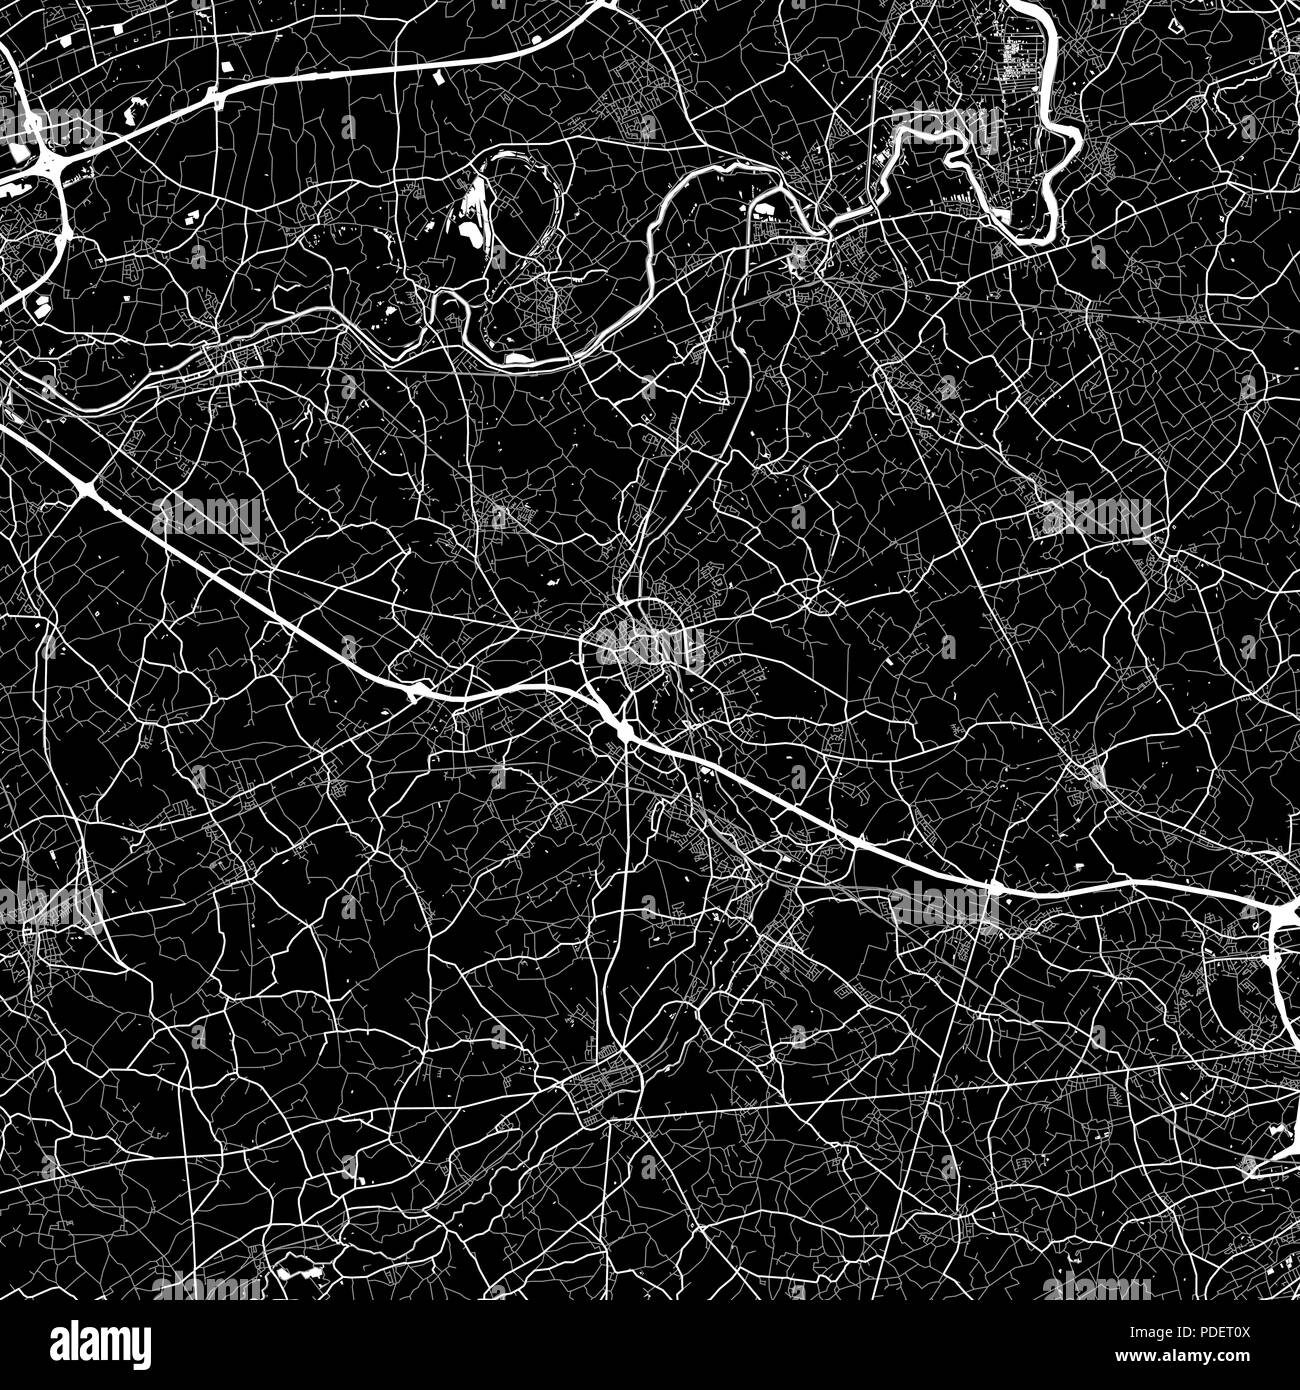 Lageplan von Aalst, Belgien. Der dunkle Hintergrund Version für Infografik und Marketing. Diese Karte von Aalst, Flämische Region, enthält Straßen, Wasserwege eine Stock Vektor